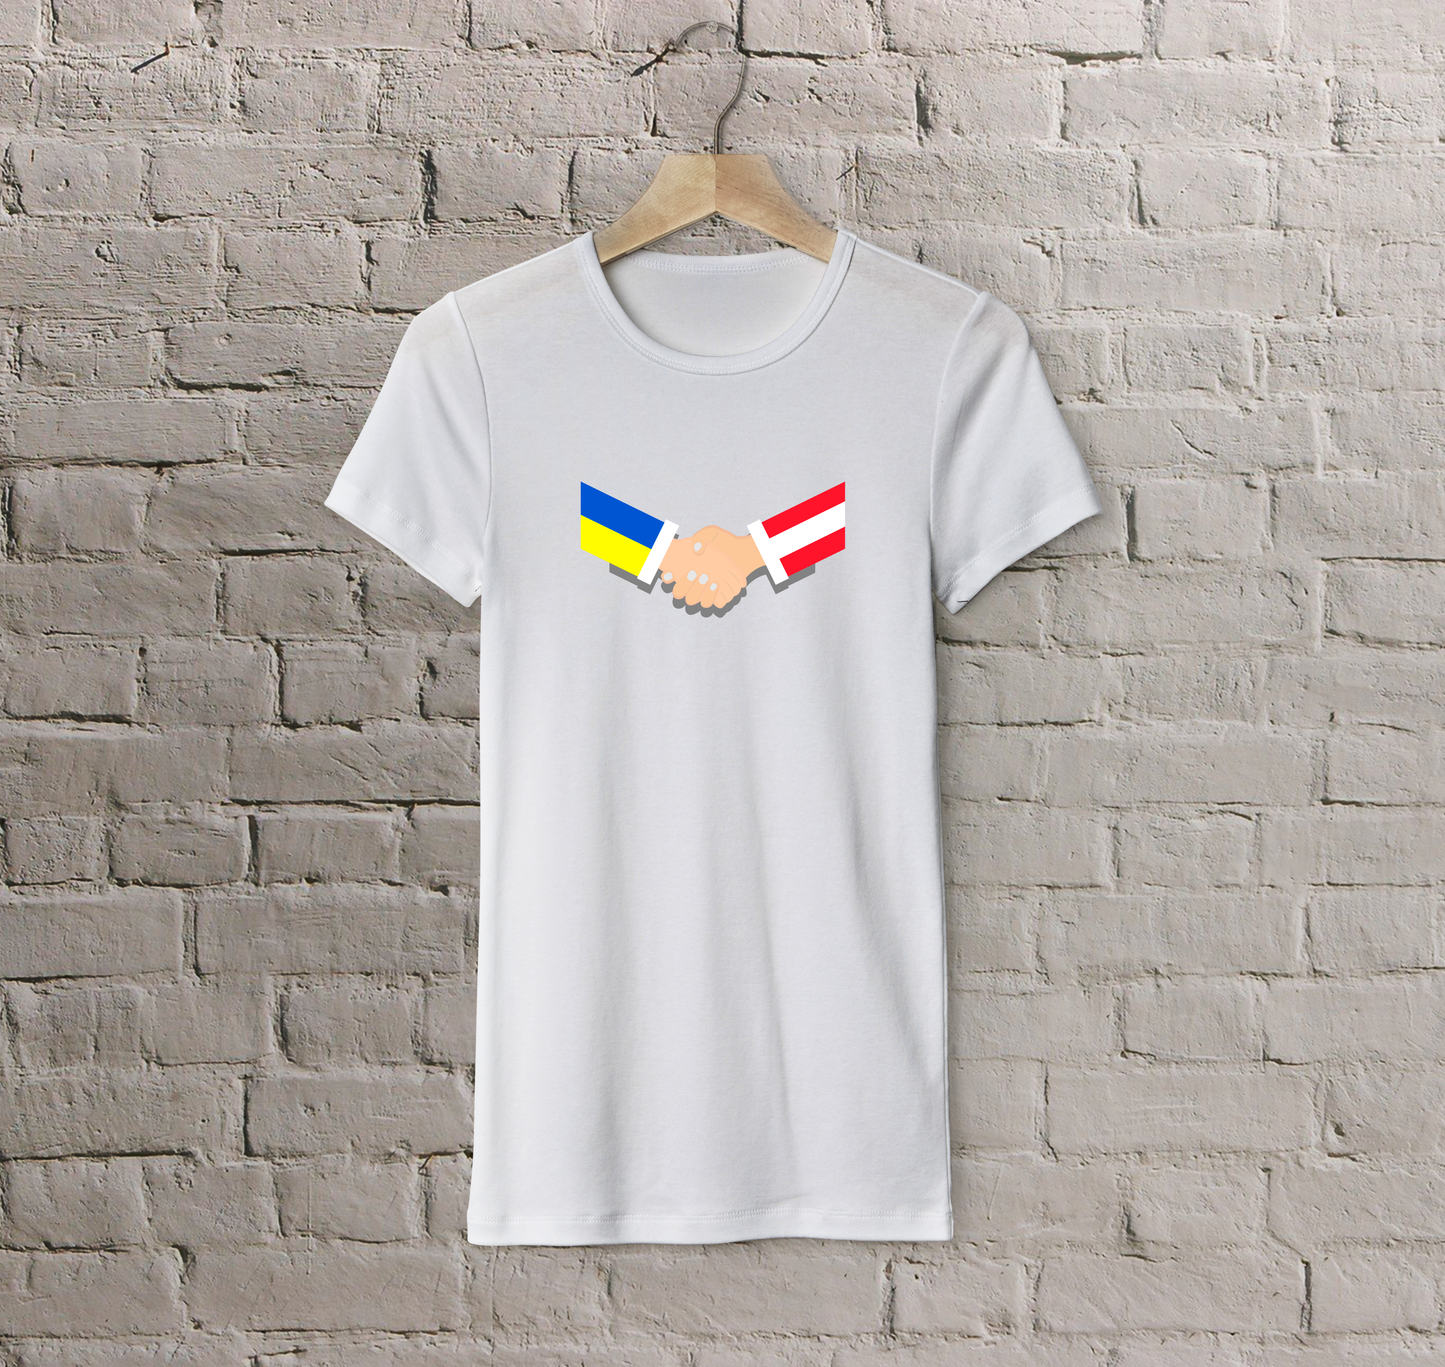 T-shirt Austria + Ukraine (handshake)